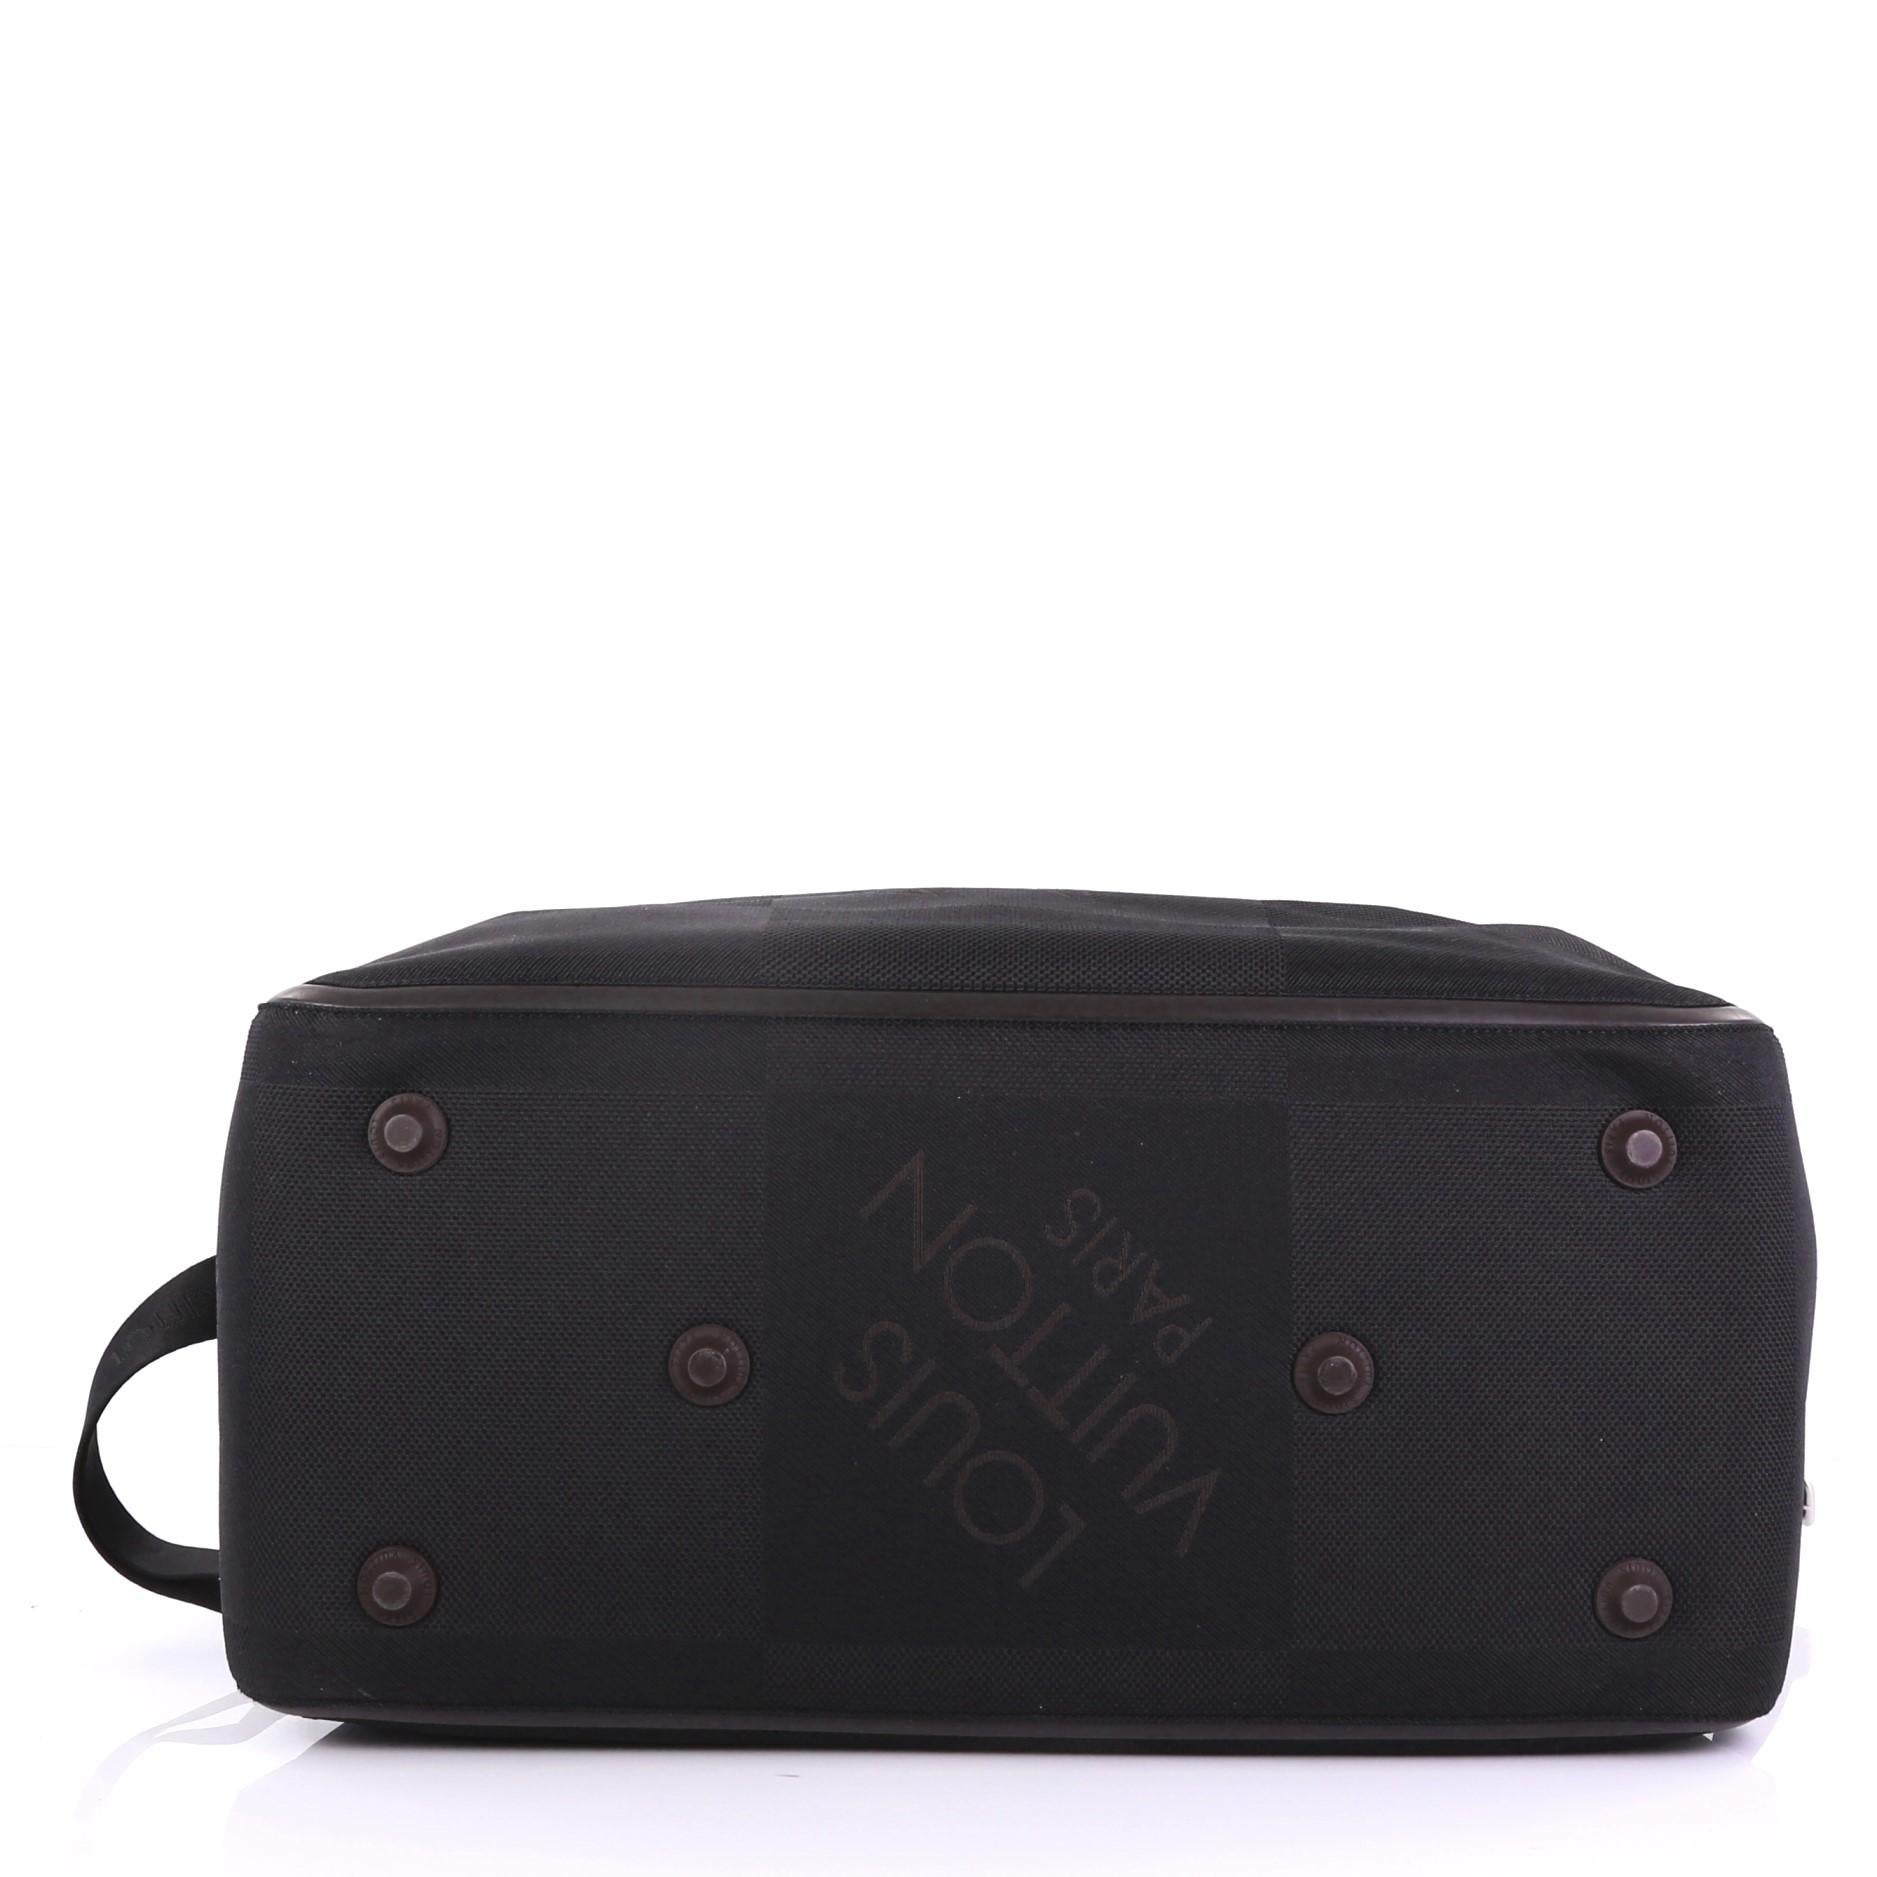 Black Louis Vuitton Geant Albatros Duffle Bag Limited Edition Canvas